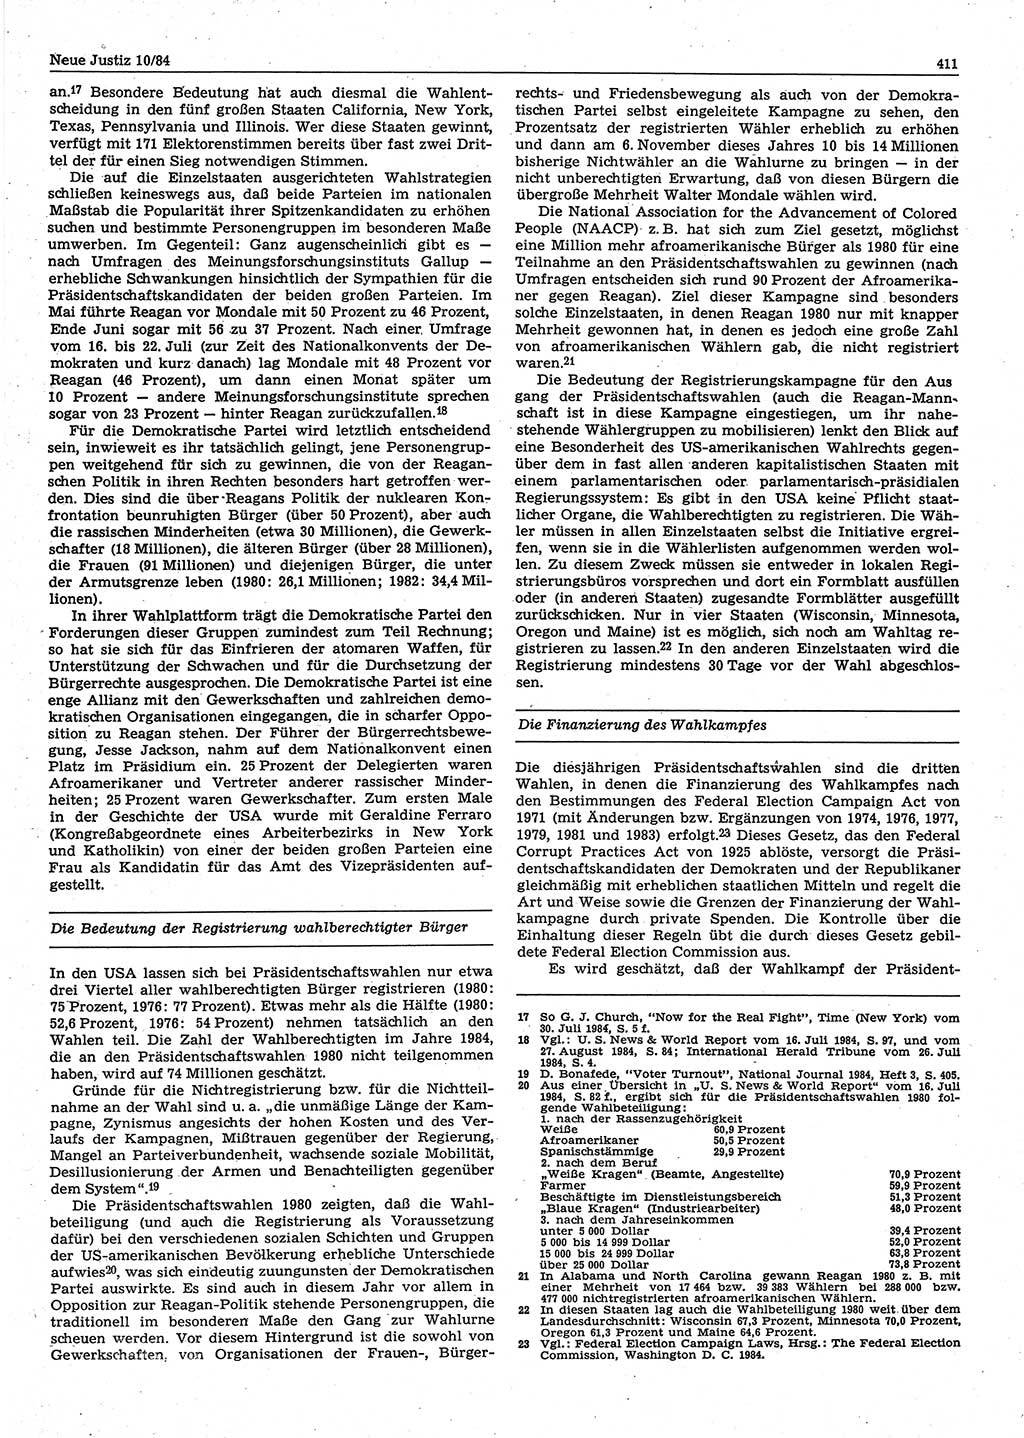 Neue Justiz (NJ), Zeitschrift für sozialistisches Recht und Gesetzlichkeit [Deutsche Demokratische Republik (DDR)], 38. Jahrgang 1984, Seite 411 (NJ DDR 1984, S. 411)